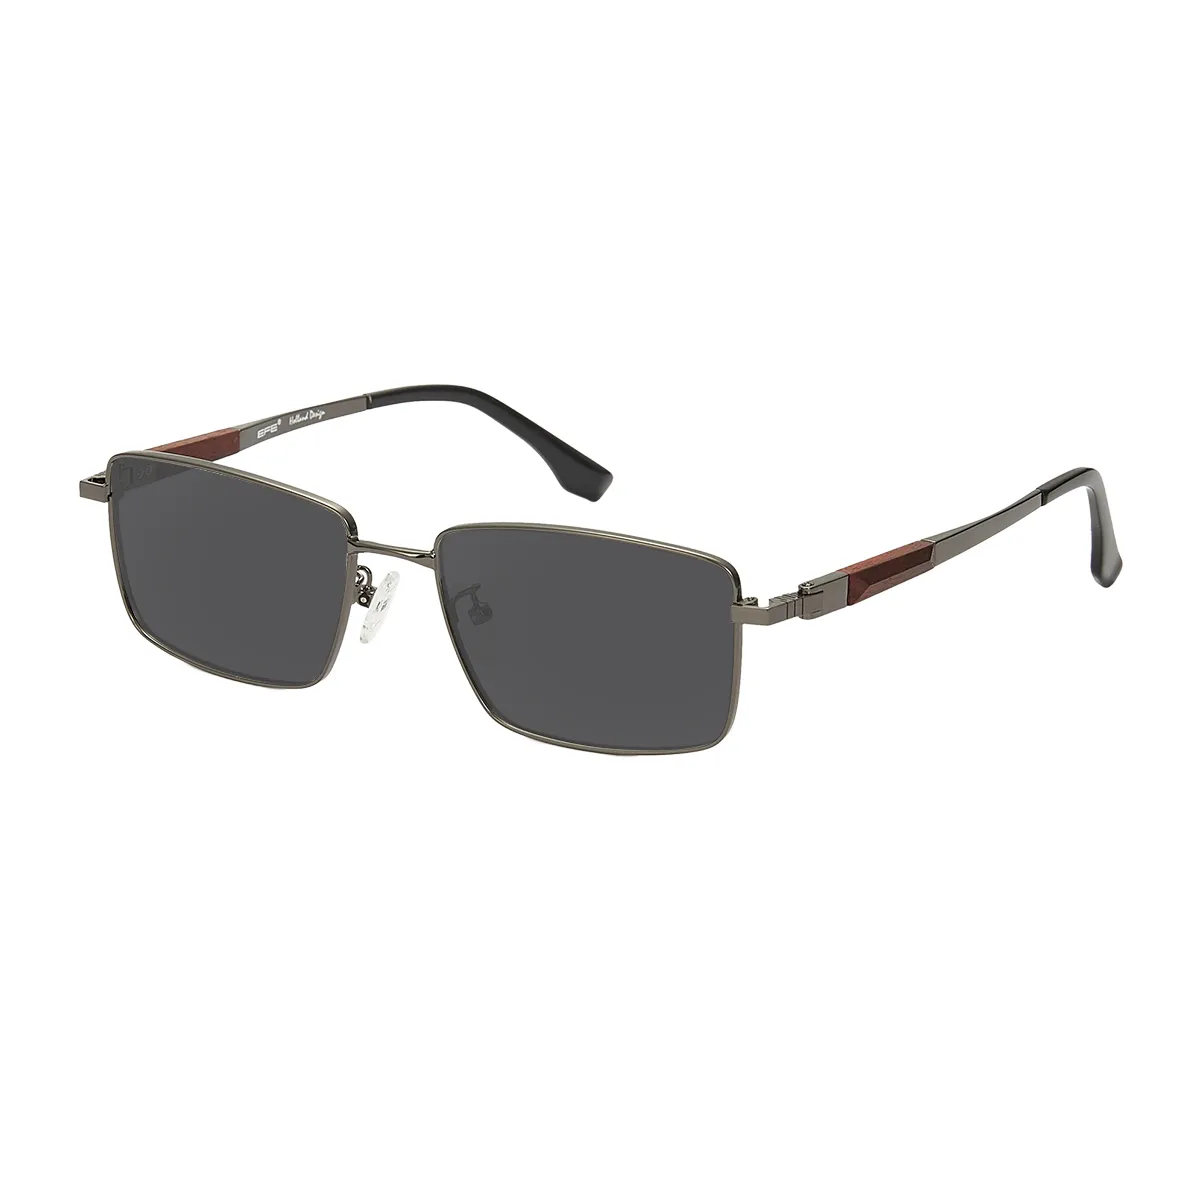 Gentry - Rectangle Gunmetal Sunglasses for Men